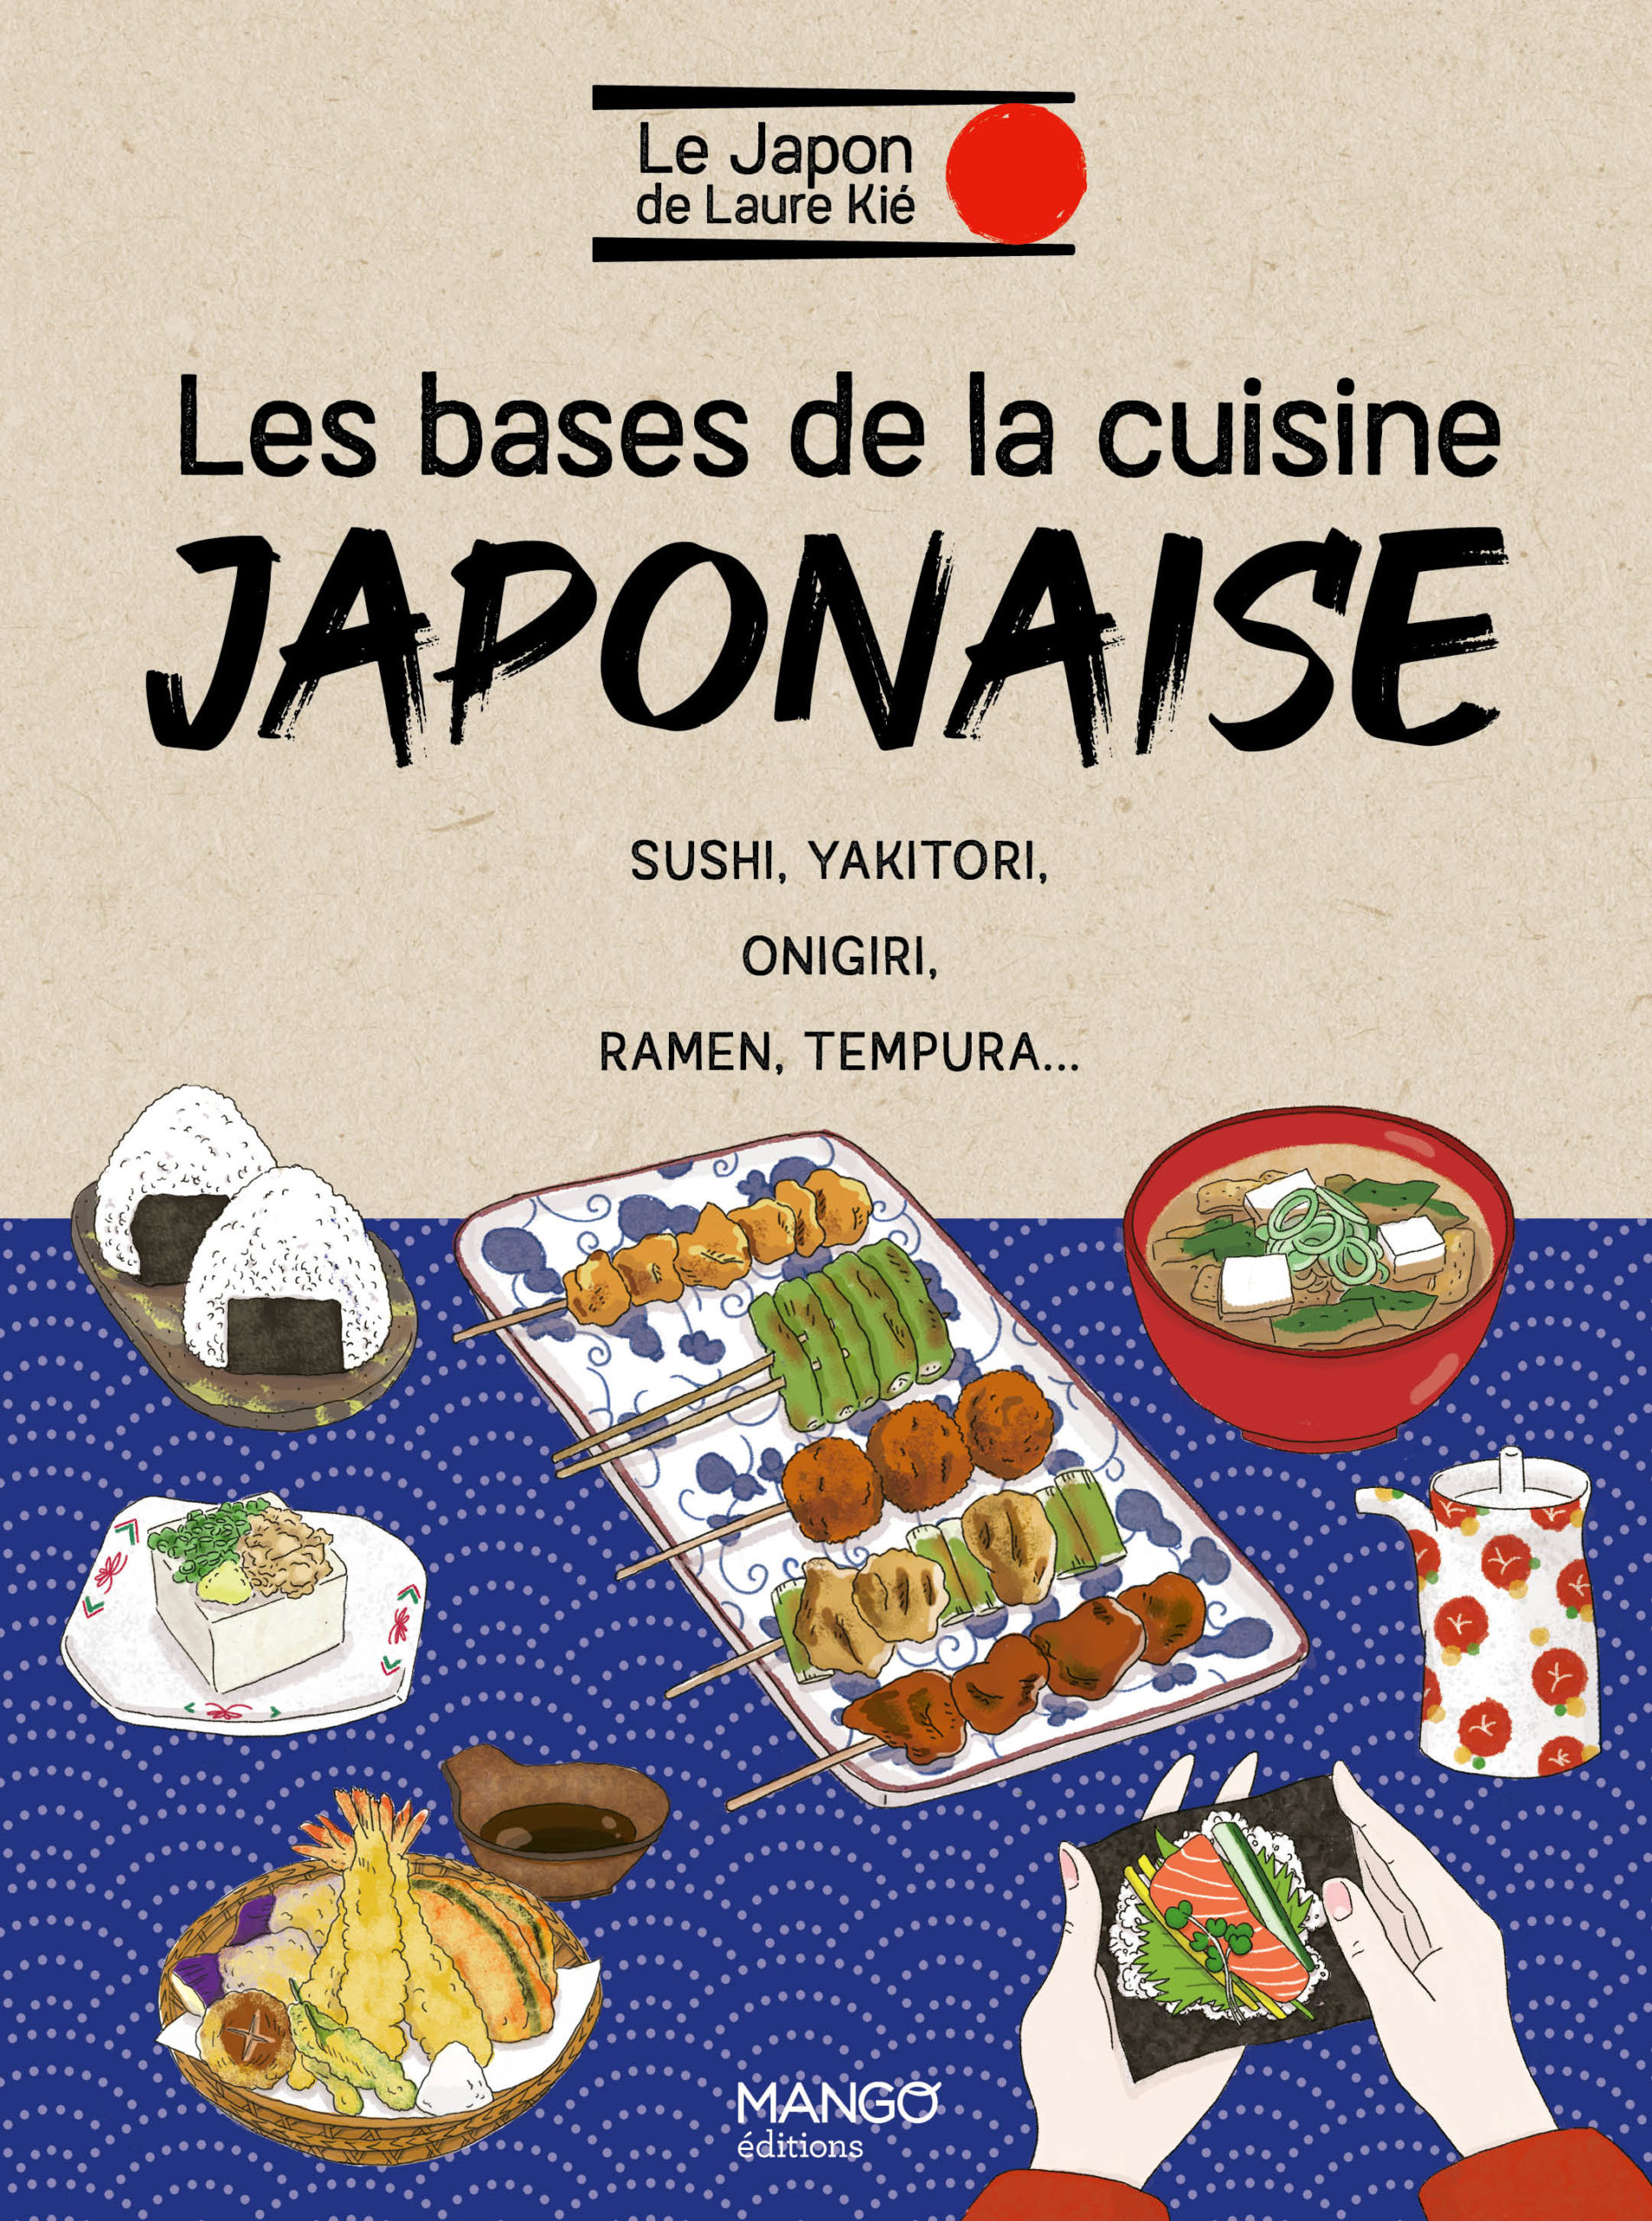 Deux livres illustrés pour découvrir la cuisine japonaise paraissent chez Mango.